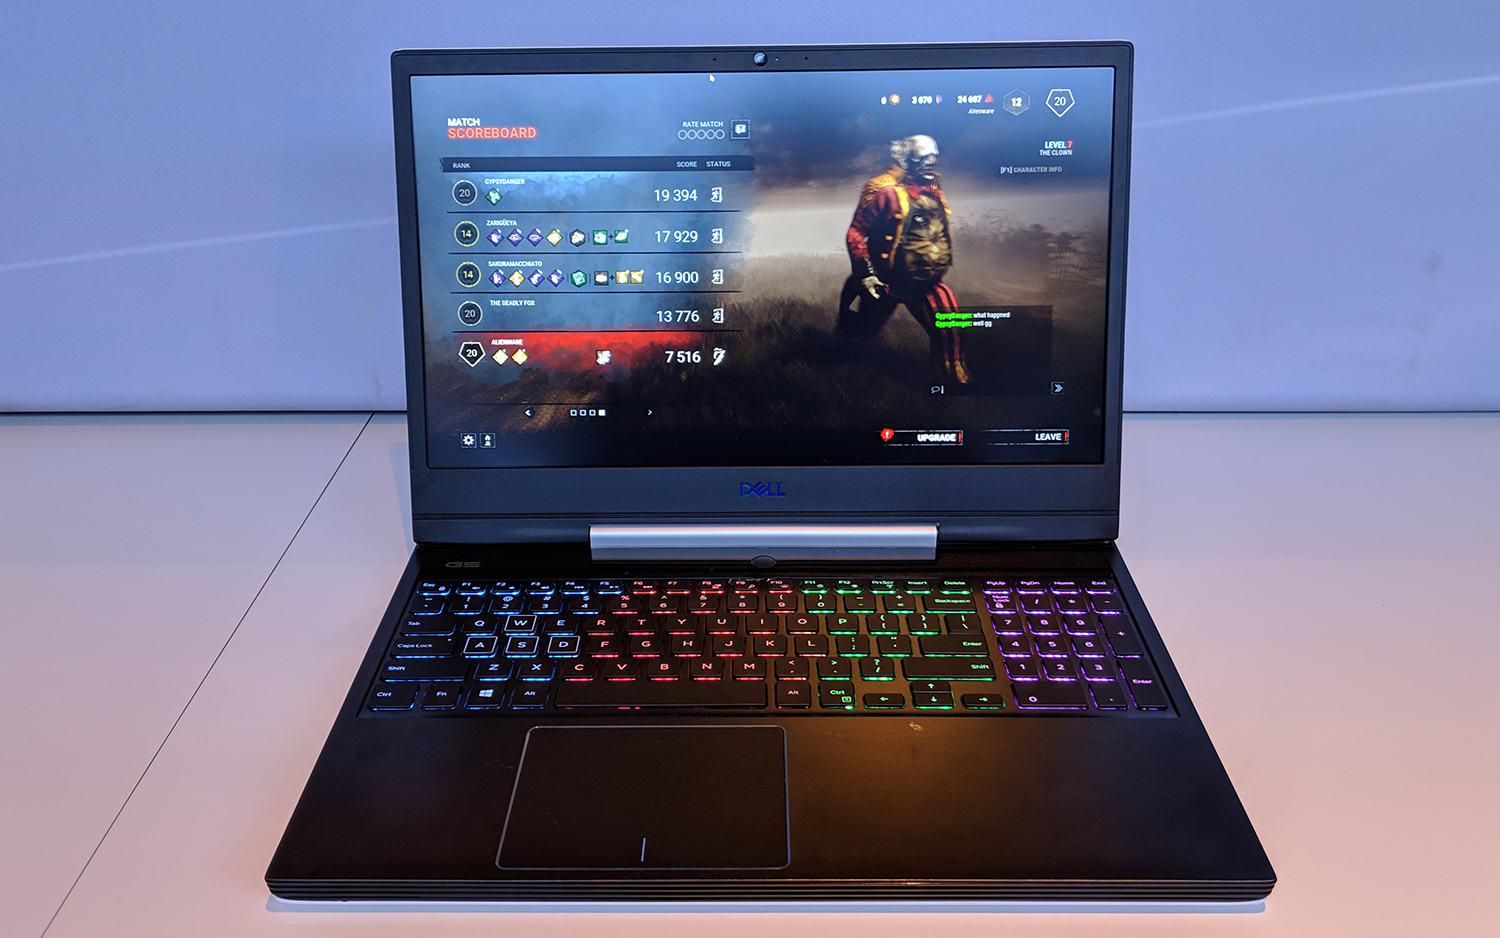 Dell chính thức bán
Gaming G-Series 2019 tại thị trường Việt Nam - Laptop gaming
dành cho dân văn phòng